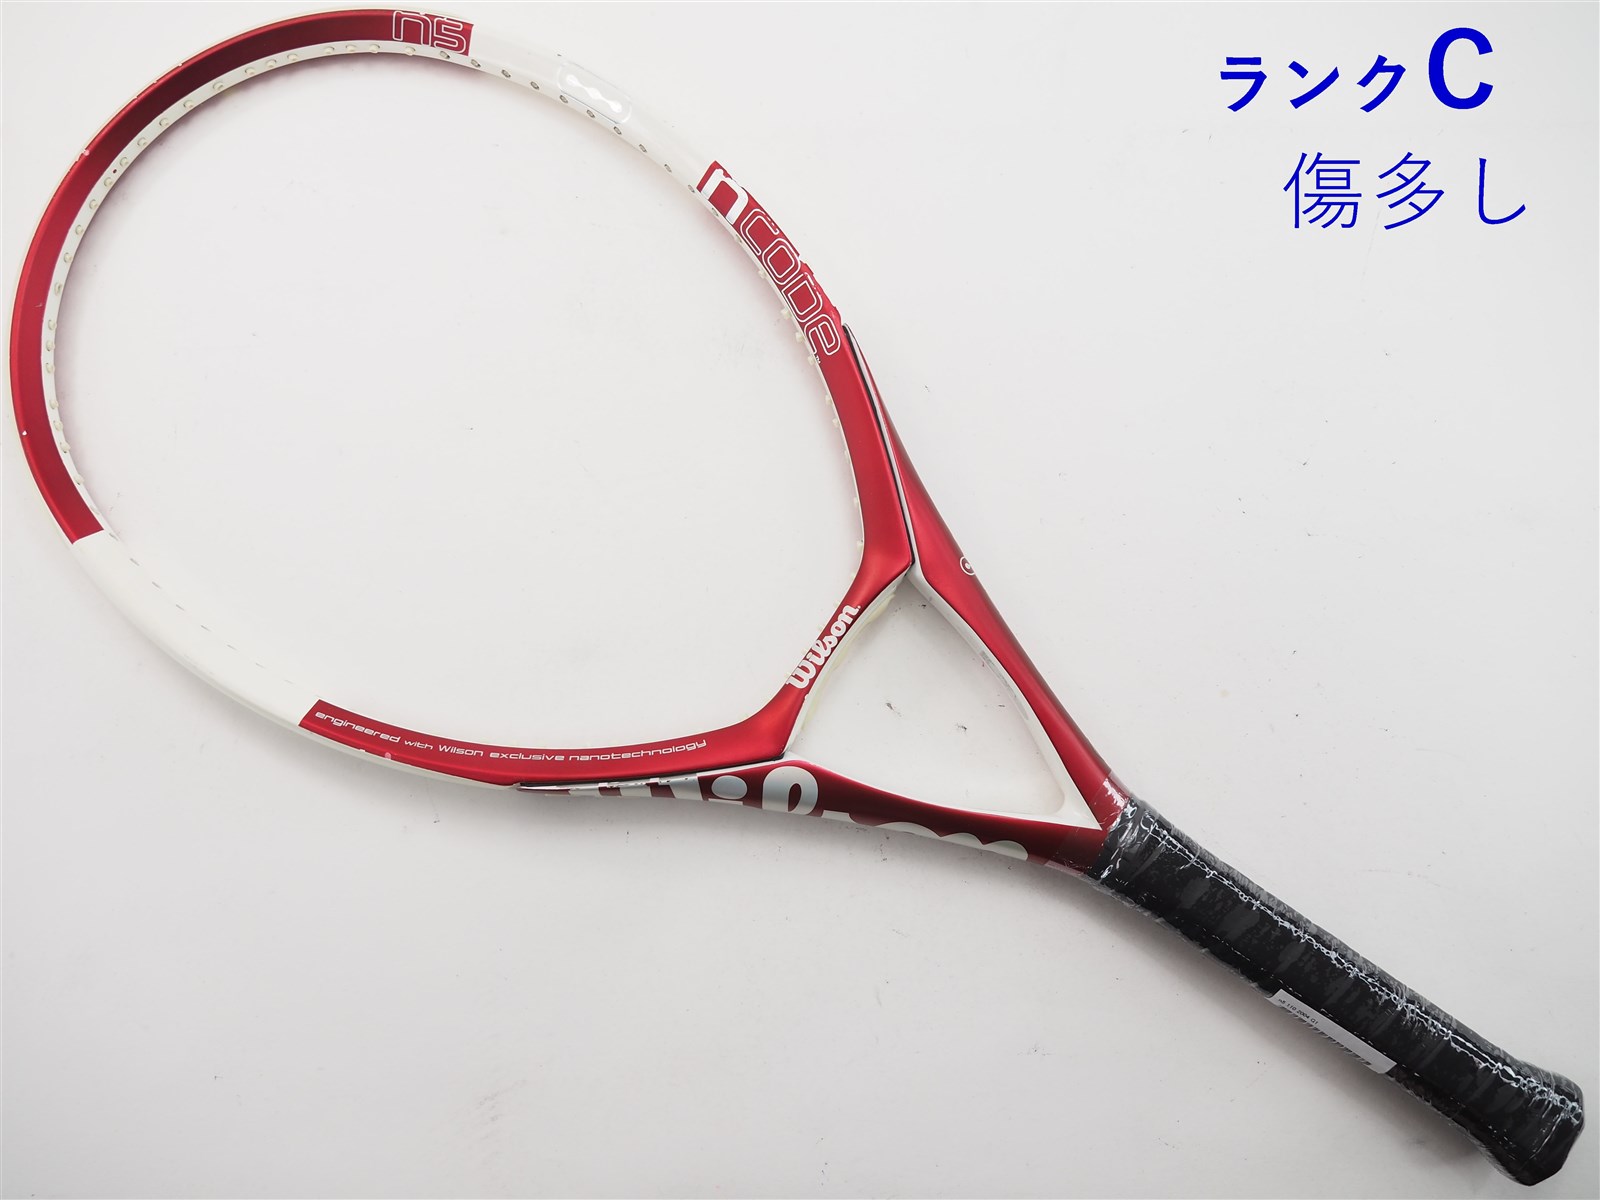 テニスラケット ウィルソン エヌ3 115 2005年モデル (G1)WILSON n3 115